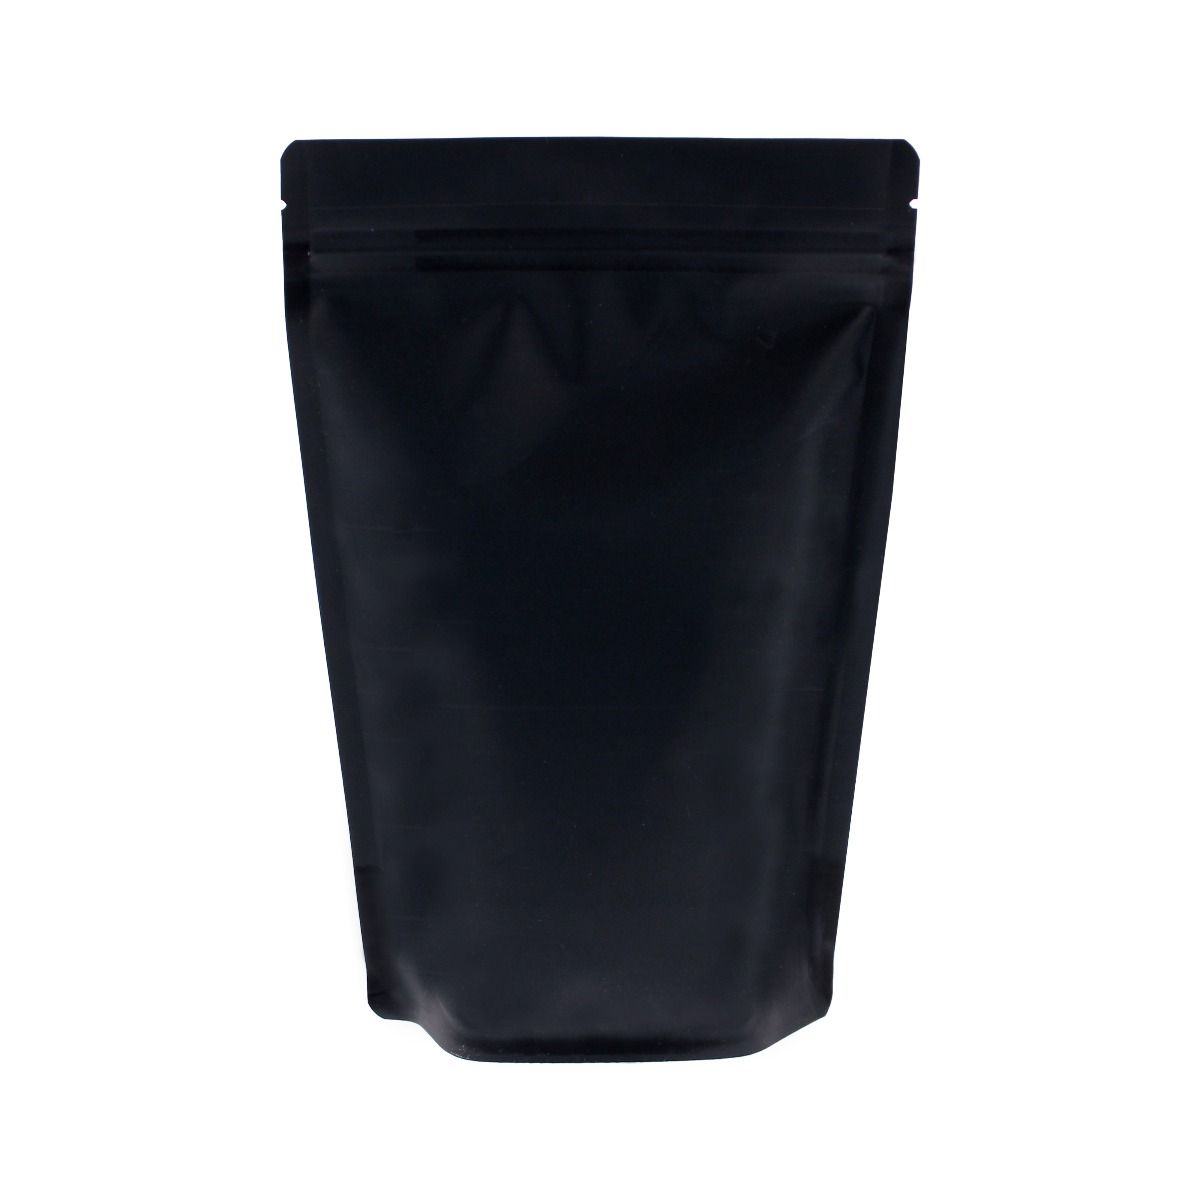 Coffee pouch - matt black (100% recyclable)